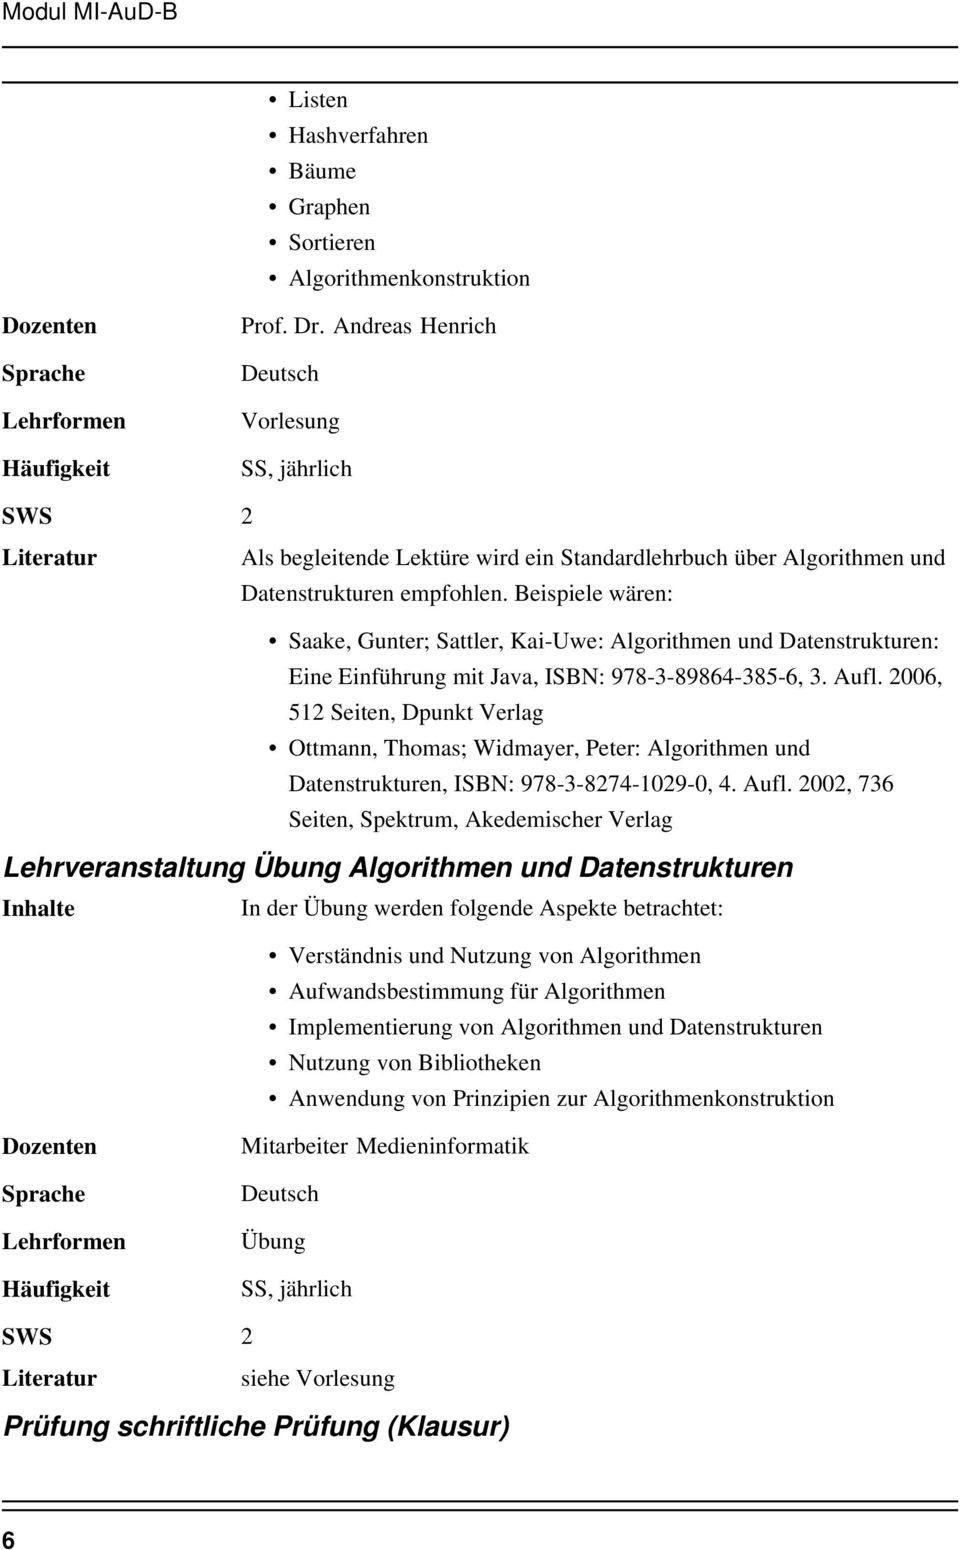 Beispiele wären: Saake, Gunter; Sattler, Kai-Uwe: Algorithmen und Datenstrukturen: Eine Einführung mit Java, ISBN: 978-3-89864-385-6, 3. Aufl.